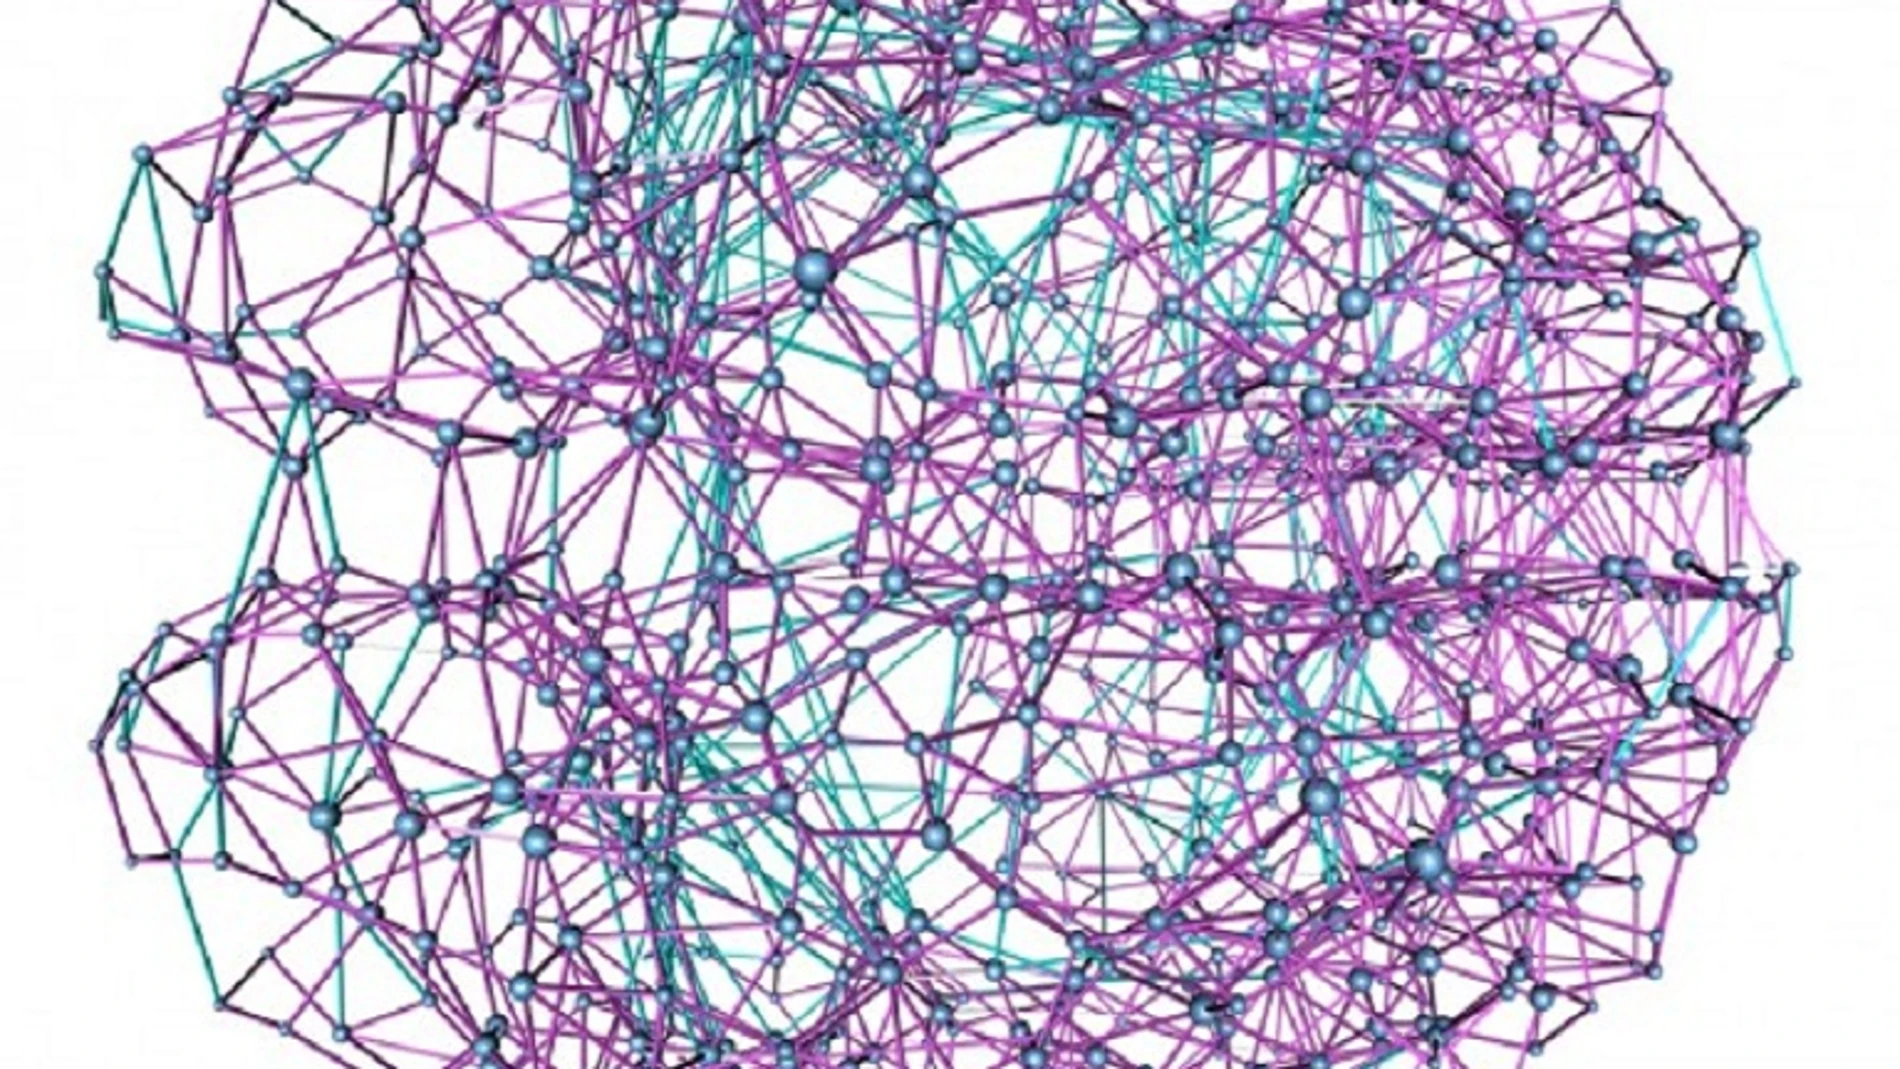 Krioukov y sus colegas han descubierto que la estructura del cerebro humano tiene una red casi ideal de conexiones (en magenta), lo que permite una transmisión óptima de información entre las regiones cerebrales